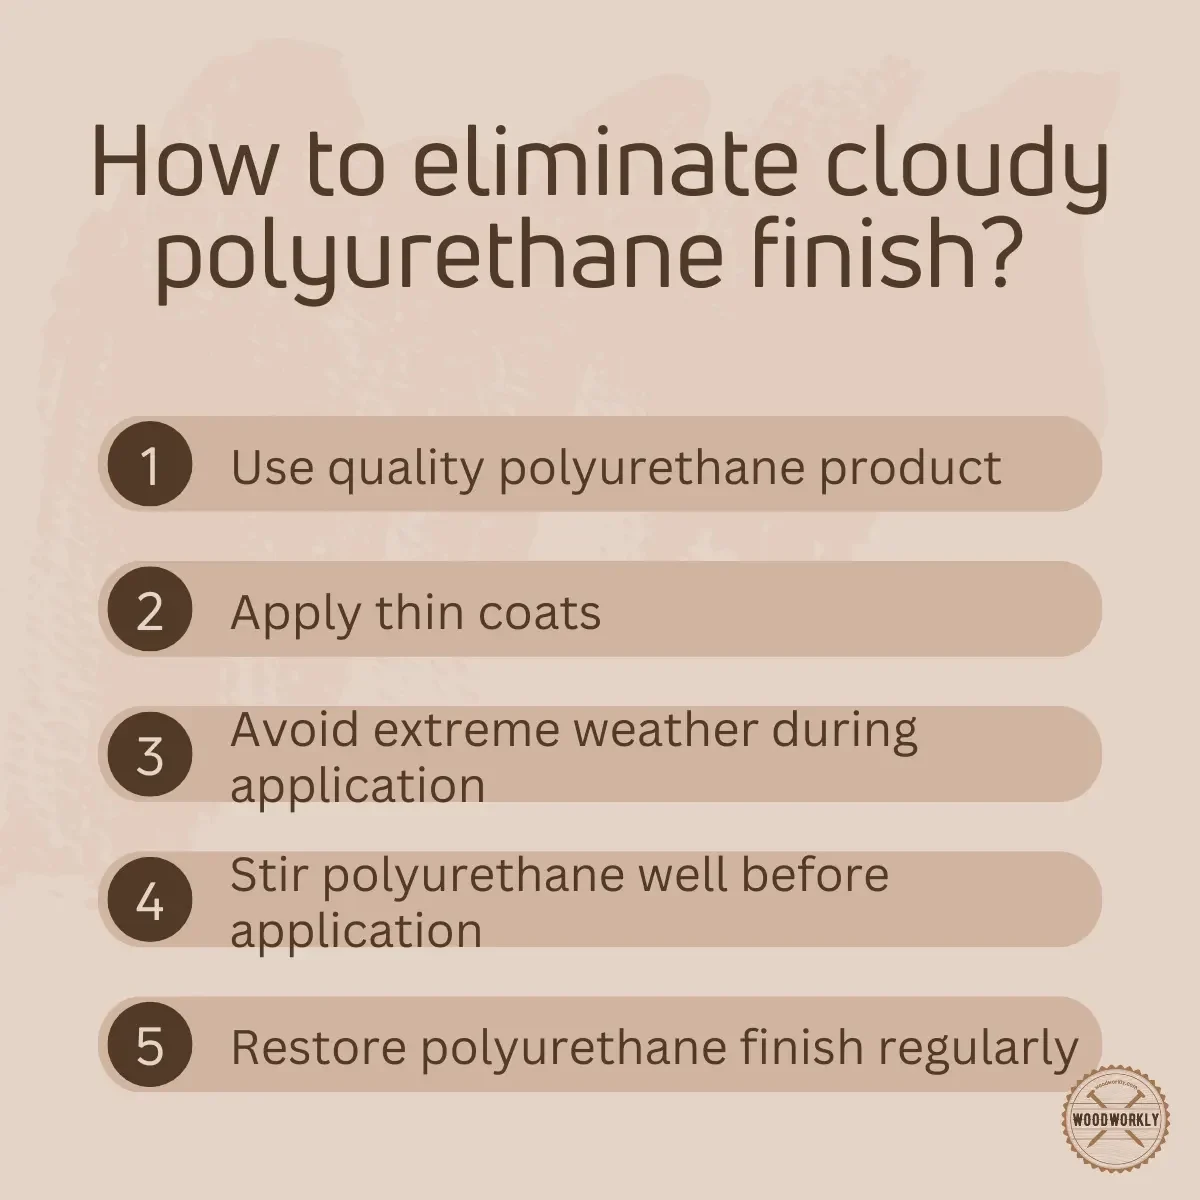 How to eliminate cloudy polyurethane finish